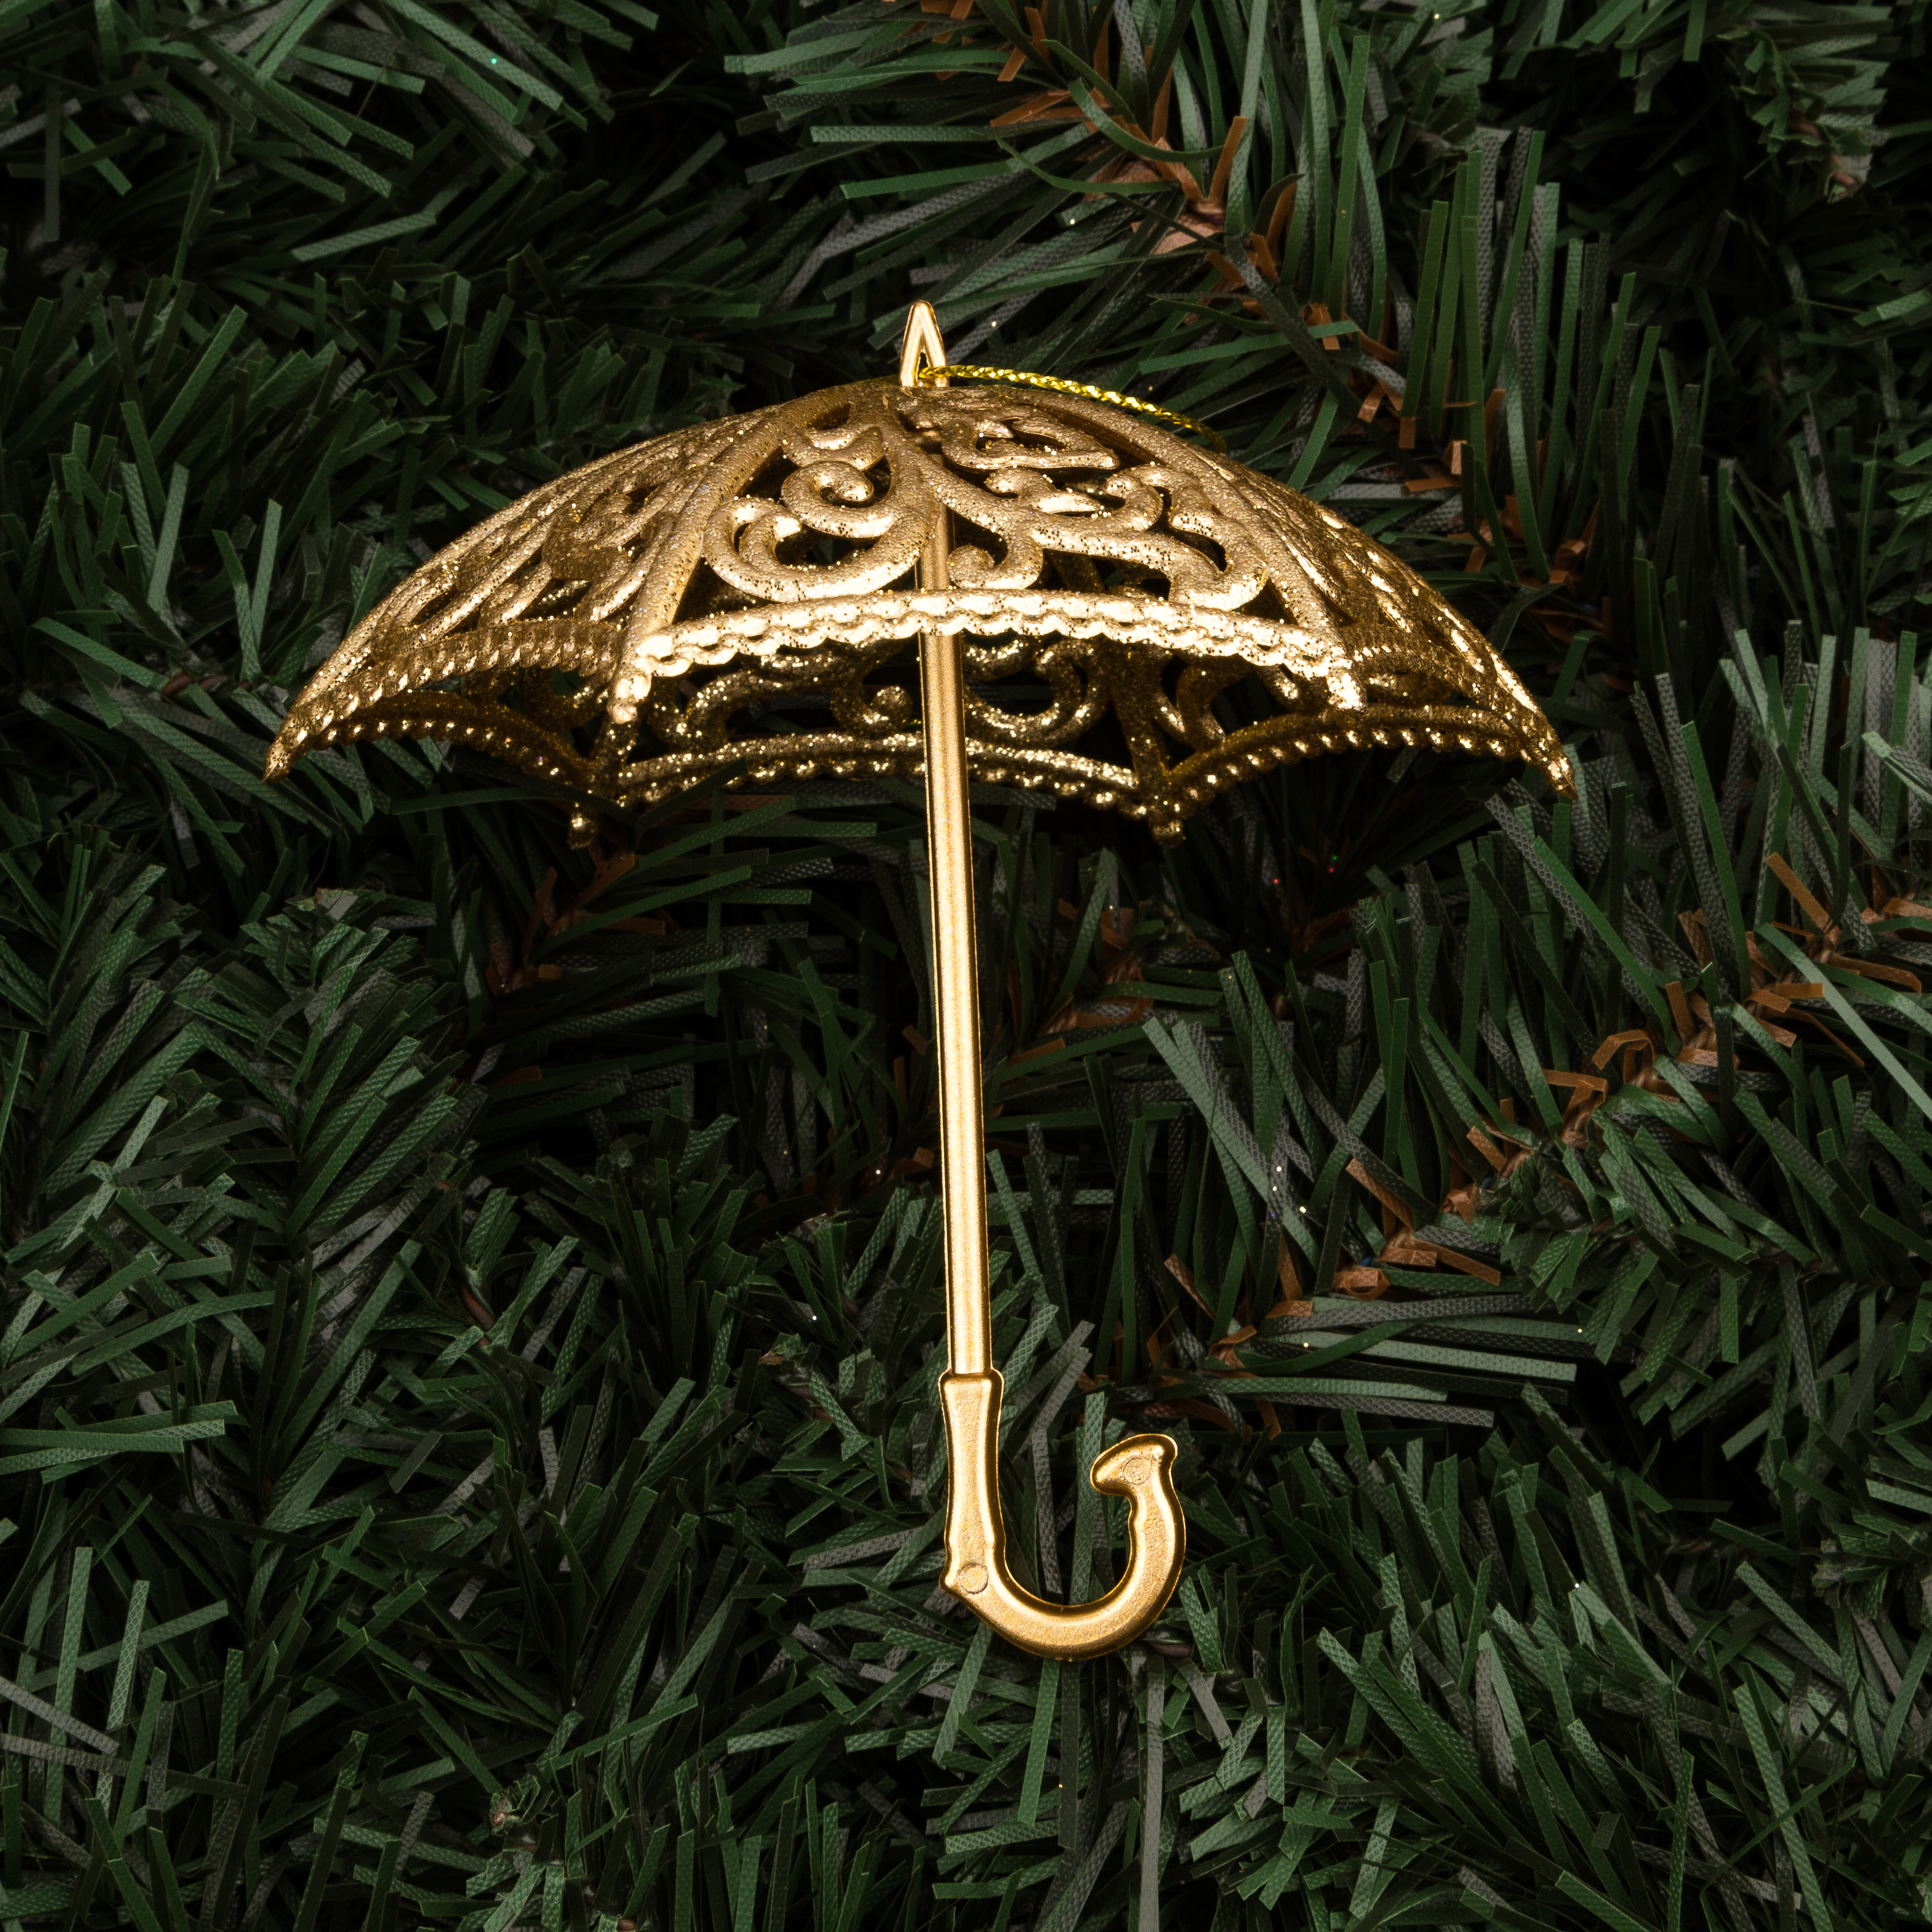 Елочное украшение Ажурный зонтик 11см, цвет - золото 788-899